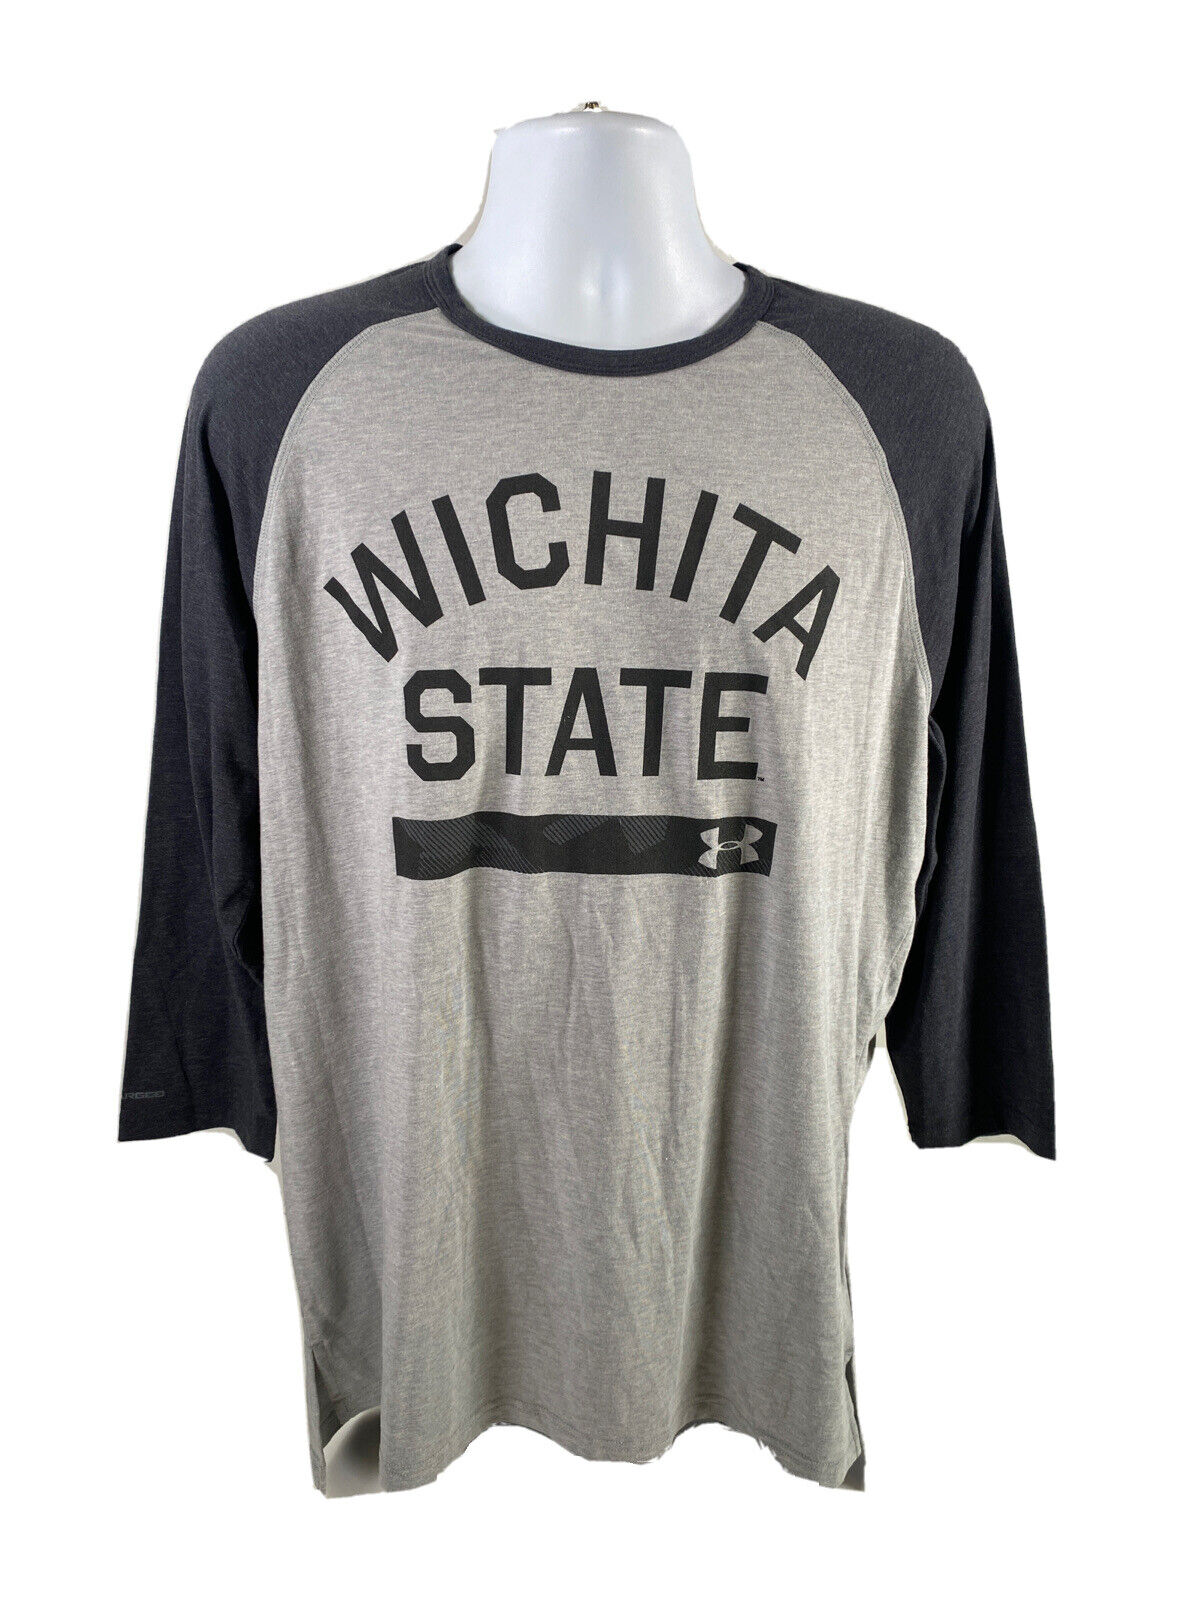 NUEVA camiseta de béisbol de manga 3/4 gris Wichita State de Under Armour para hombre - L